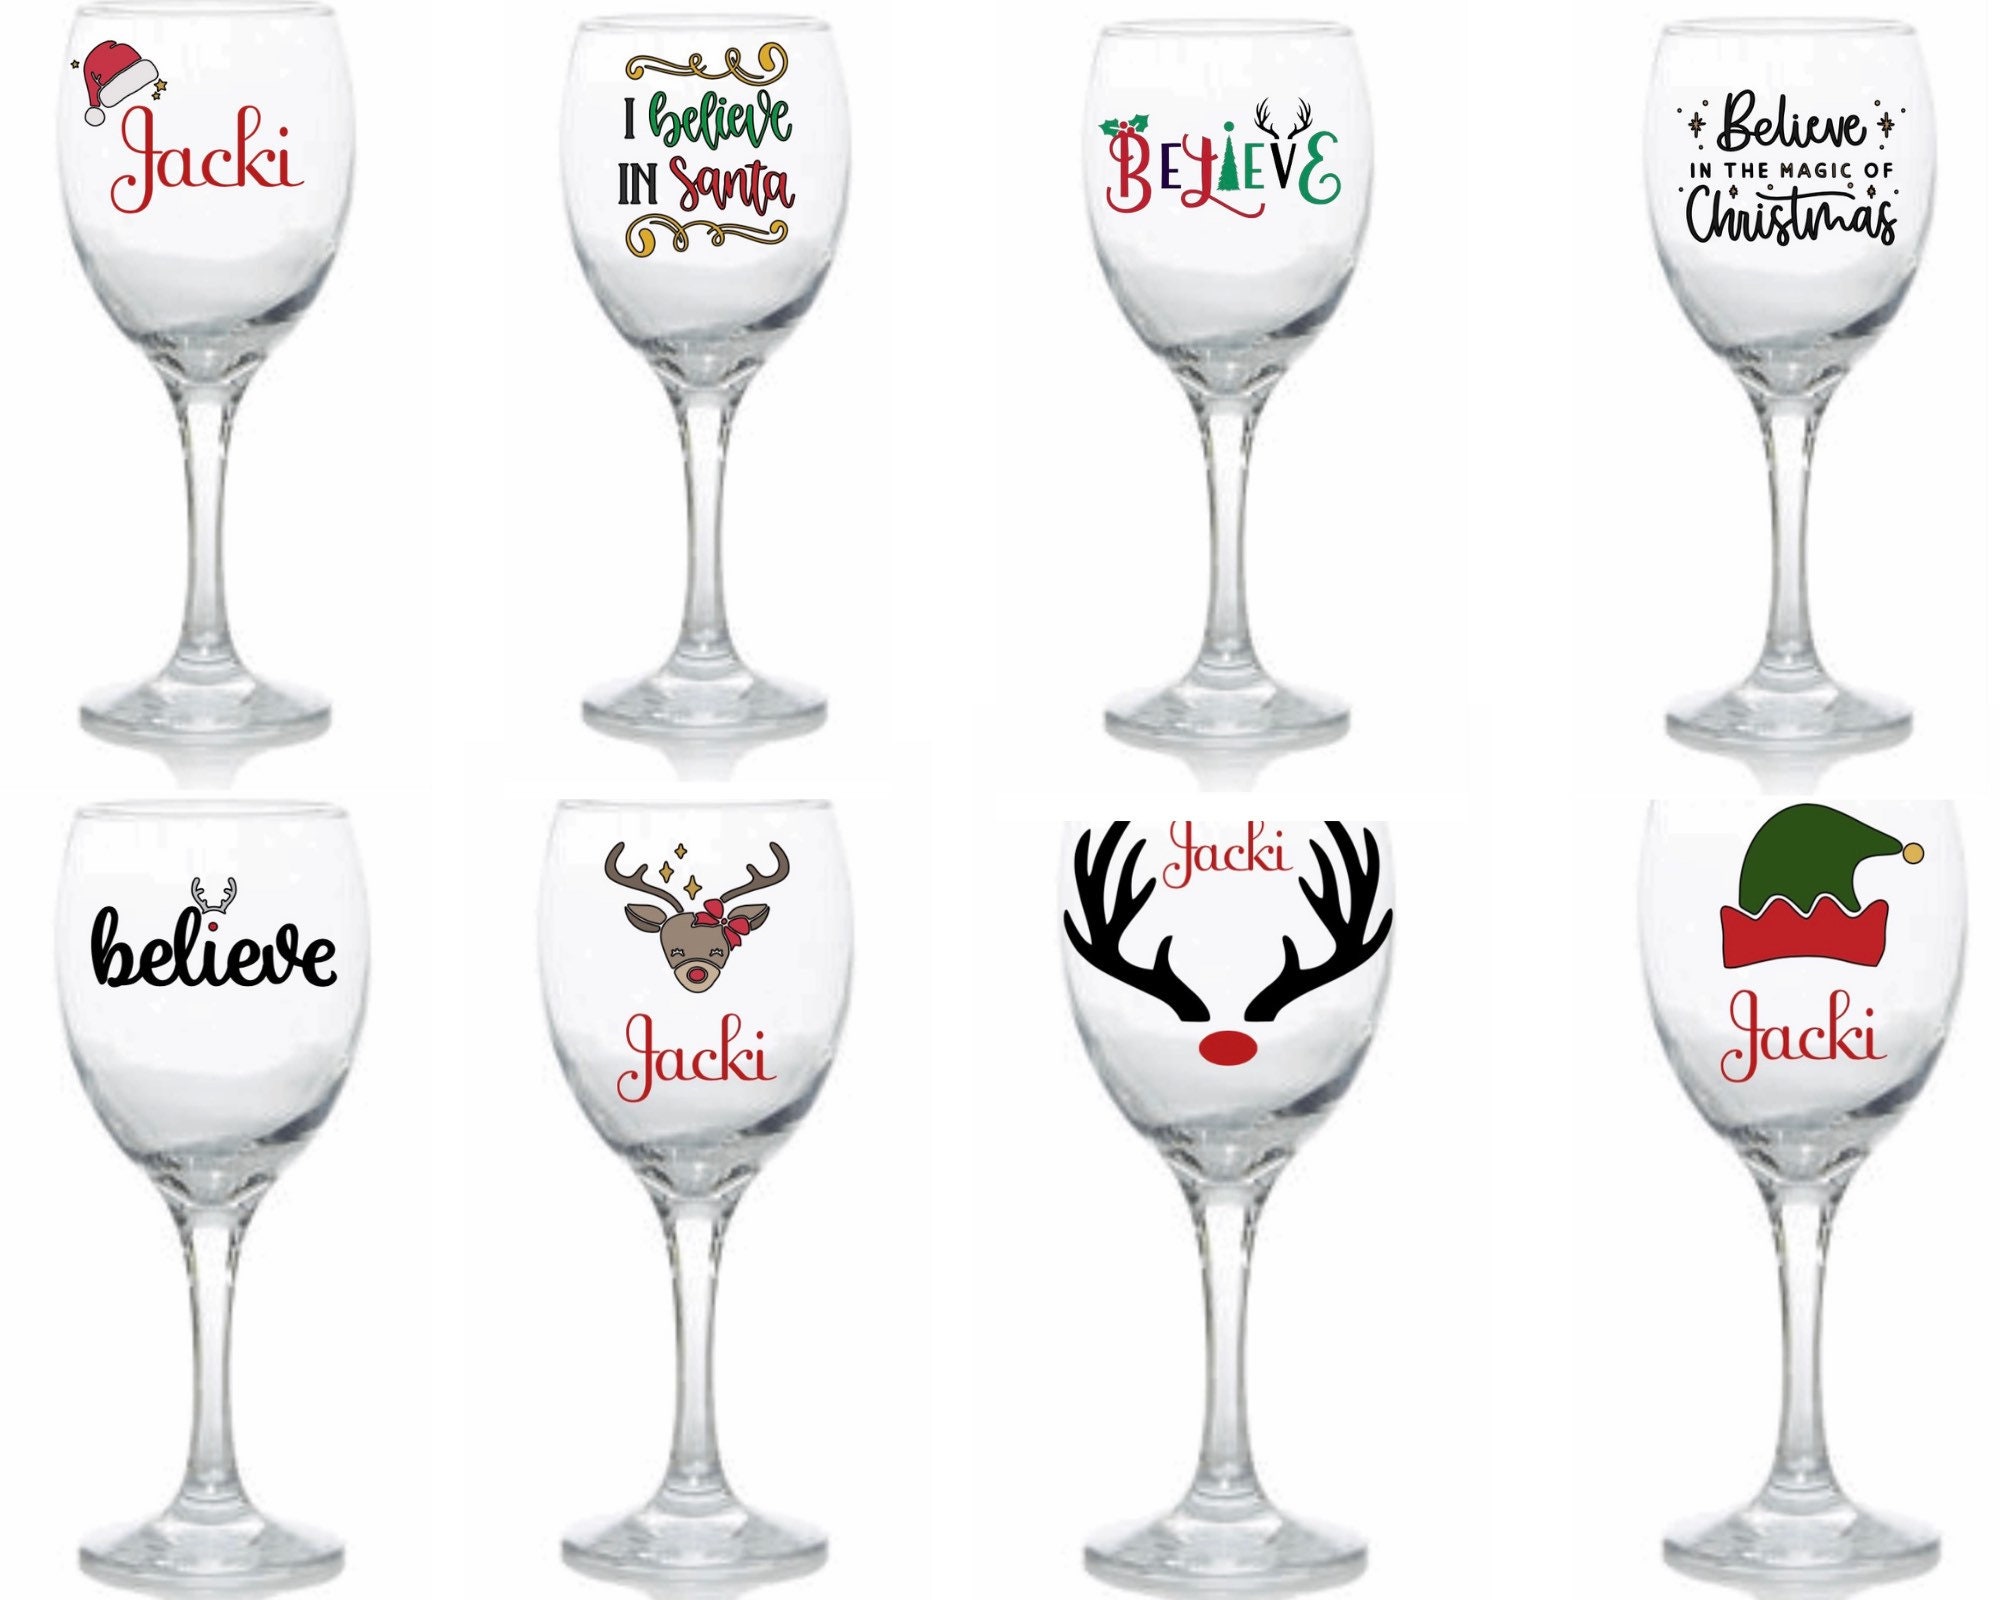 Copa de vino con mensaje, copas con mensajes orginales regalos Navidad  Nochevieja